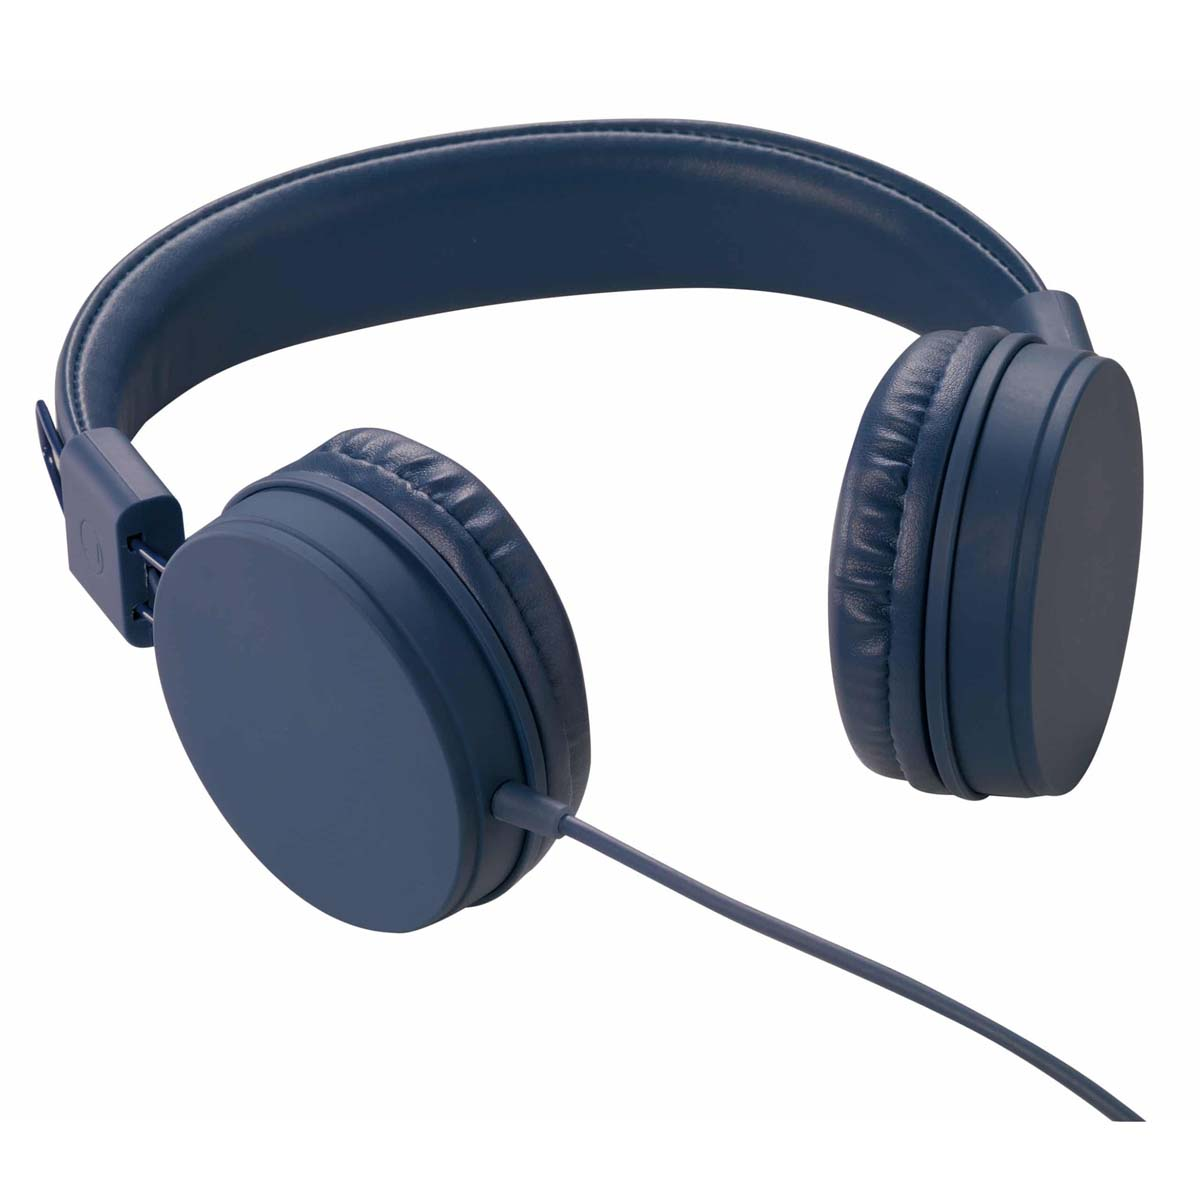 VIVANCO 25152, On-ear Ohraufliegende Kopfhörer Blau